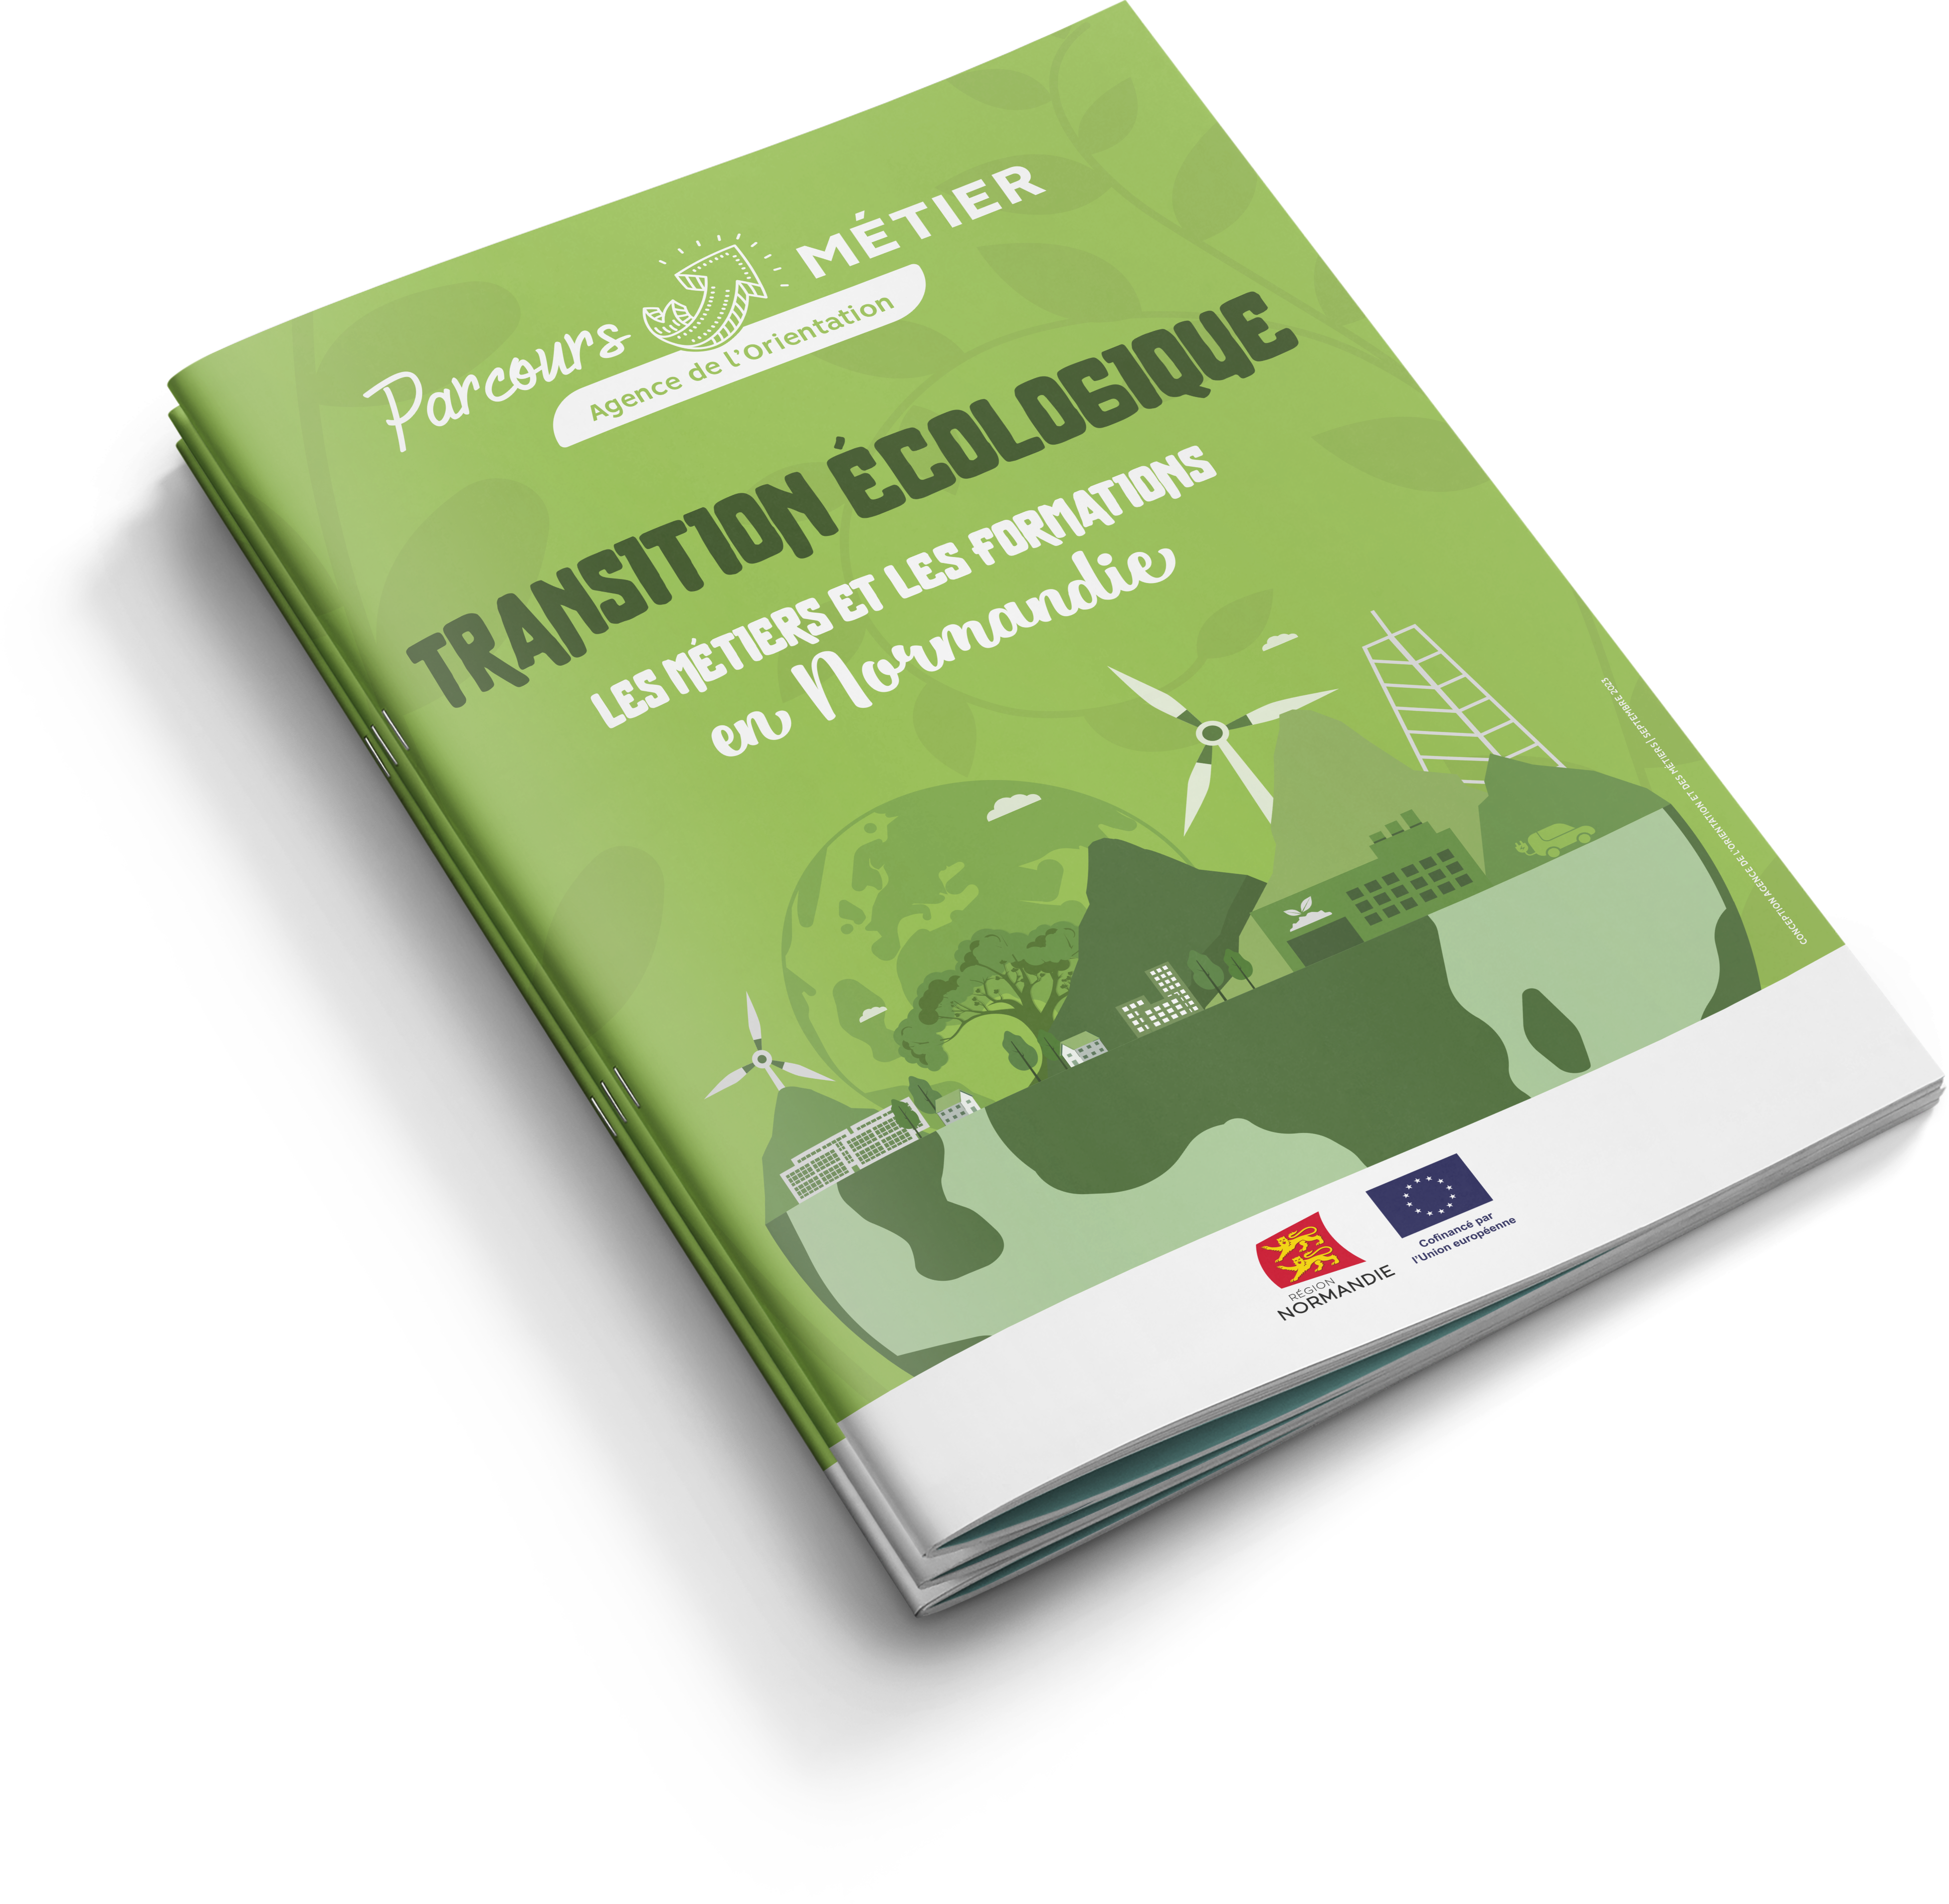 Transition écologique - Guide des métiers et formations en Normandie